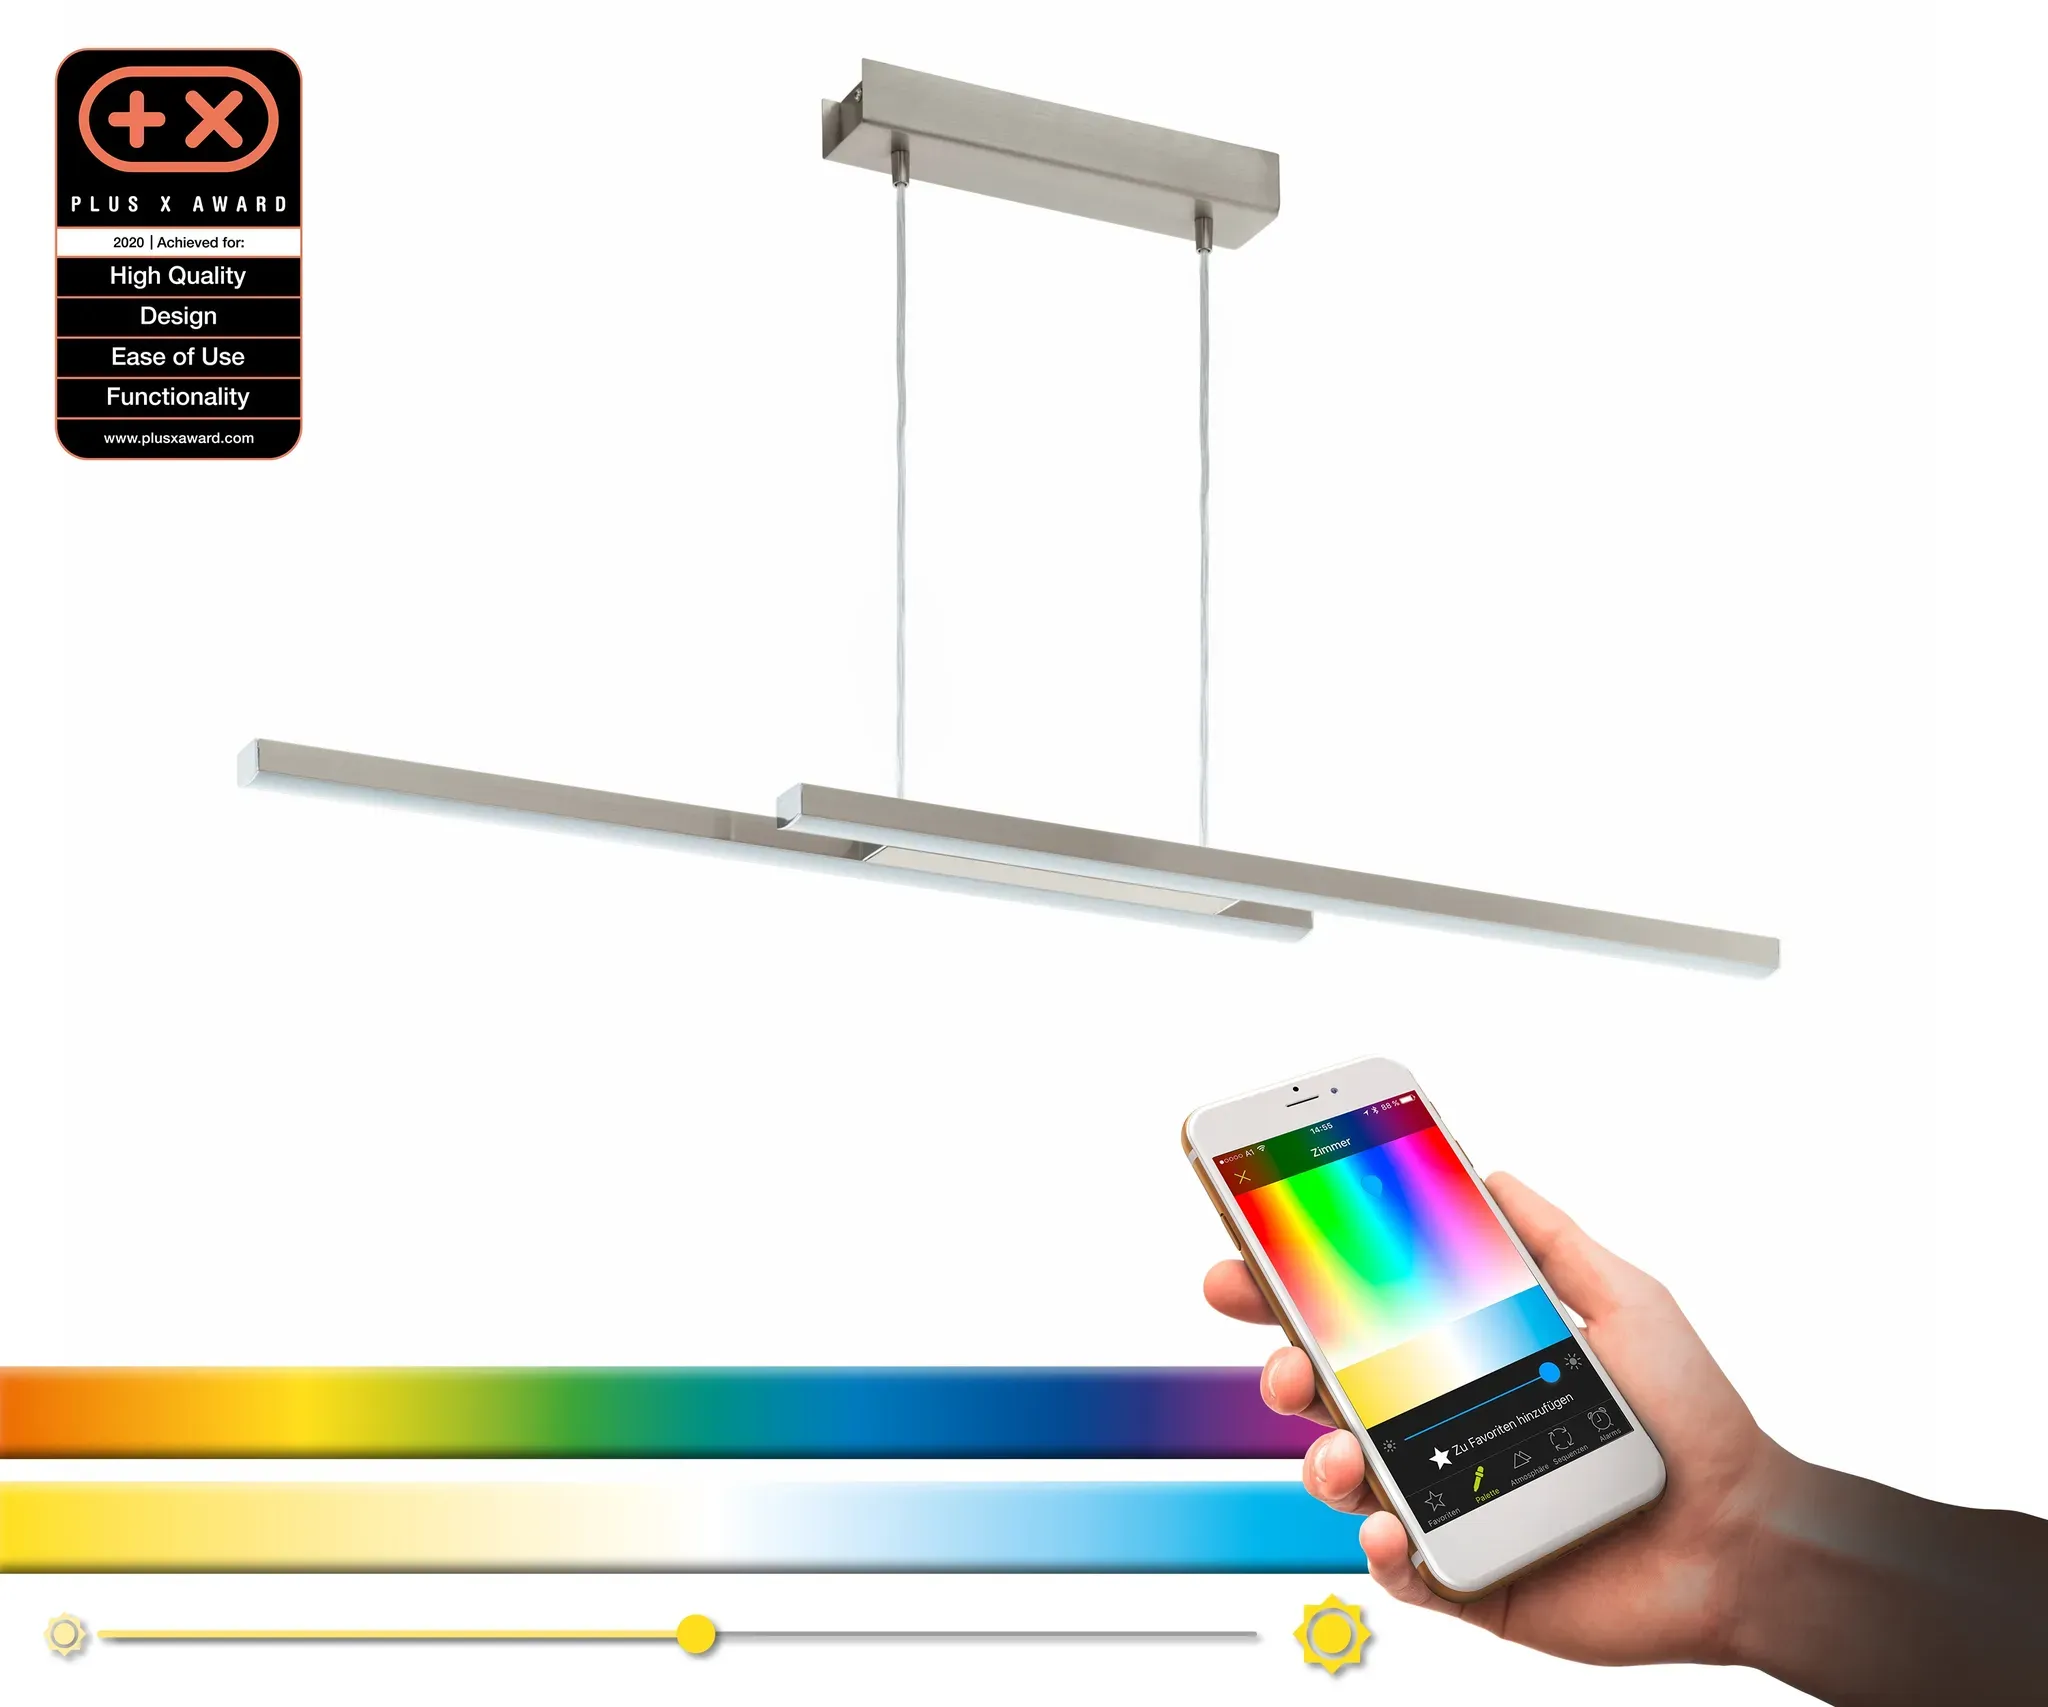 Pendelleuchte EGLO "FRAIOLI-C" Lampen grau (nickelfarben) Bürolampe Esszimmerlampe Flurlampe Hängeleuchte Küchenlampe Pendelleuchte Tageslichtlampe für Amazon Alexa Echo Lampen nickel-matt L105,5 x H120 B10 cm inkl. 2 LED-Platine App